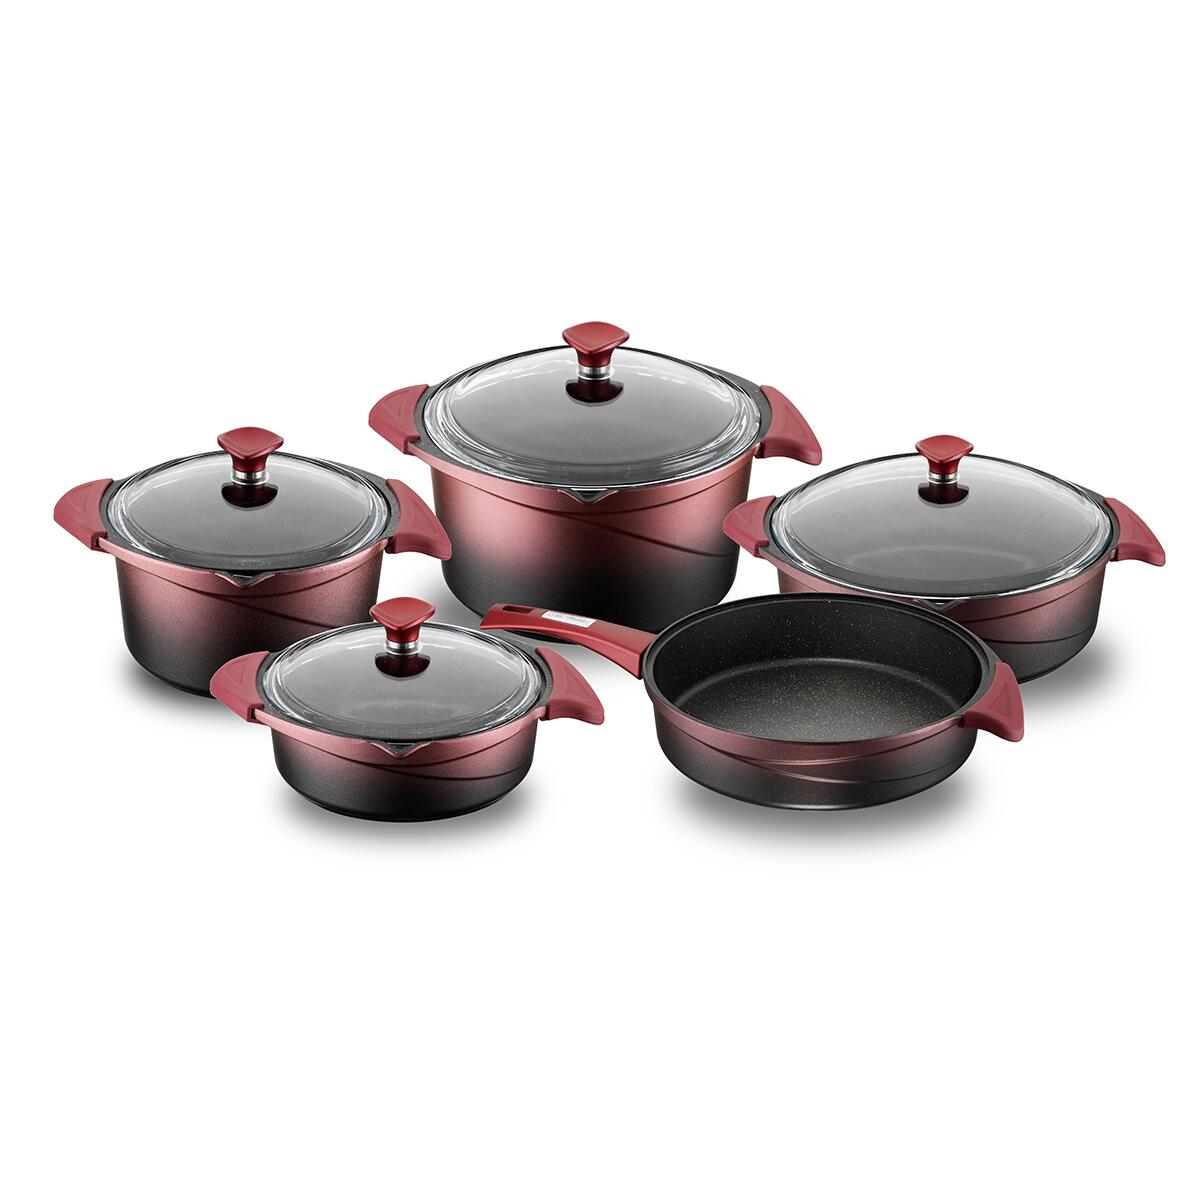 Aryıldız Flipper Red Black Glass Cookware Set of 5